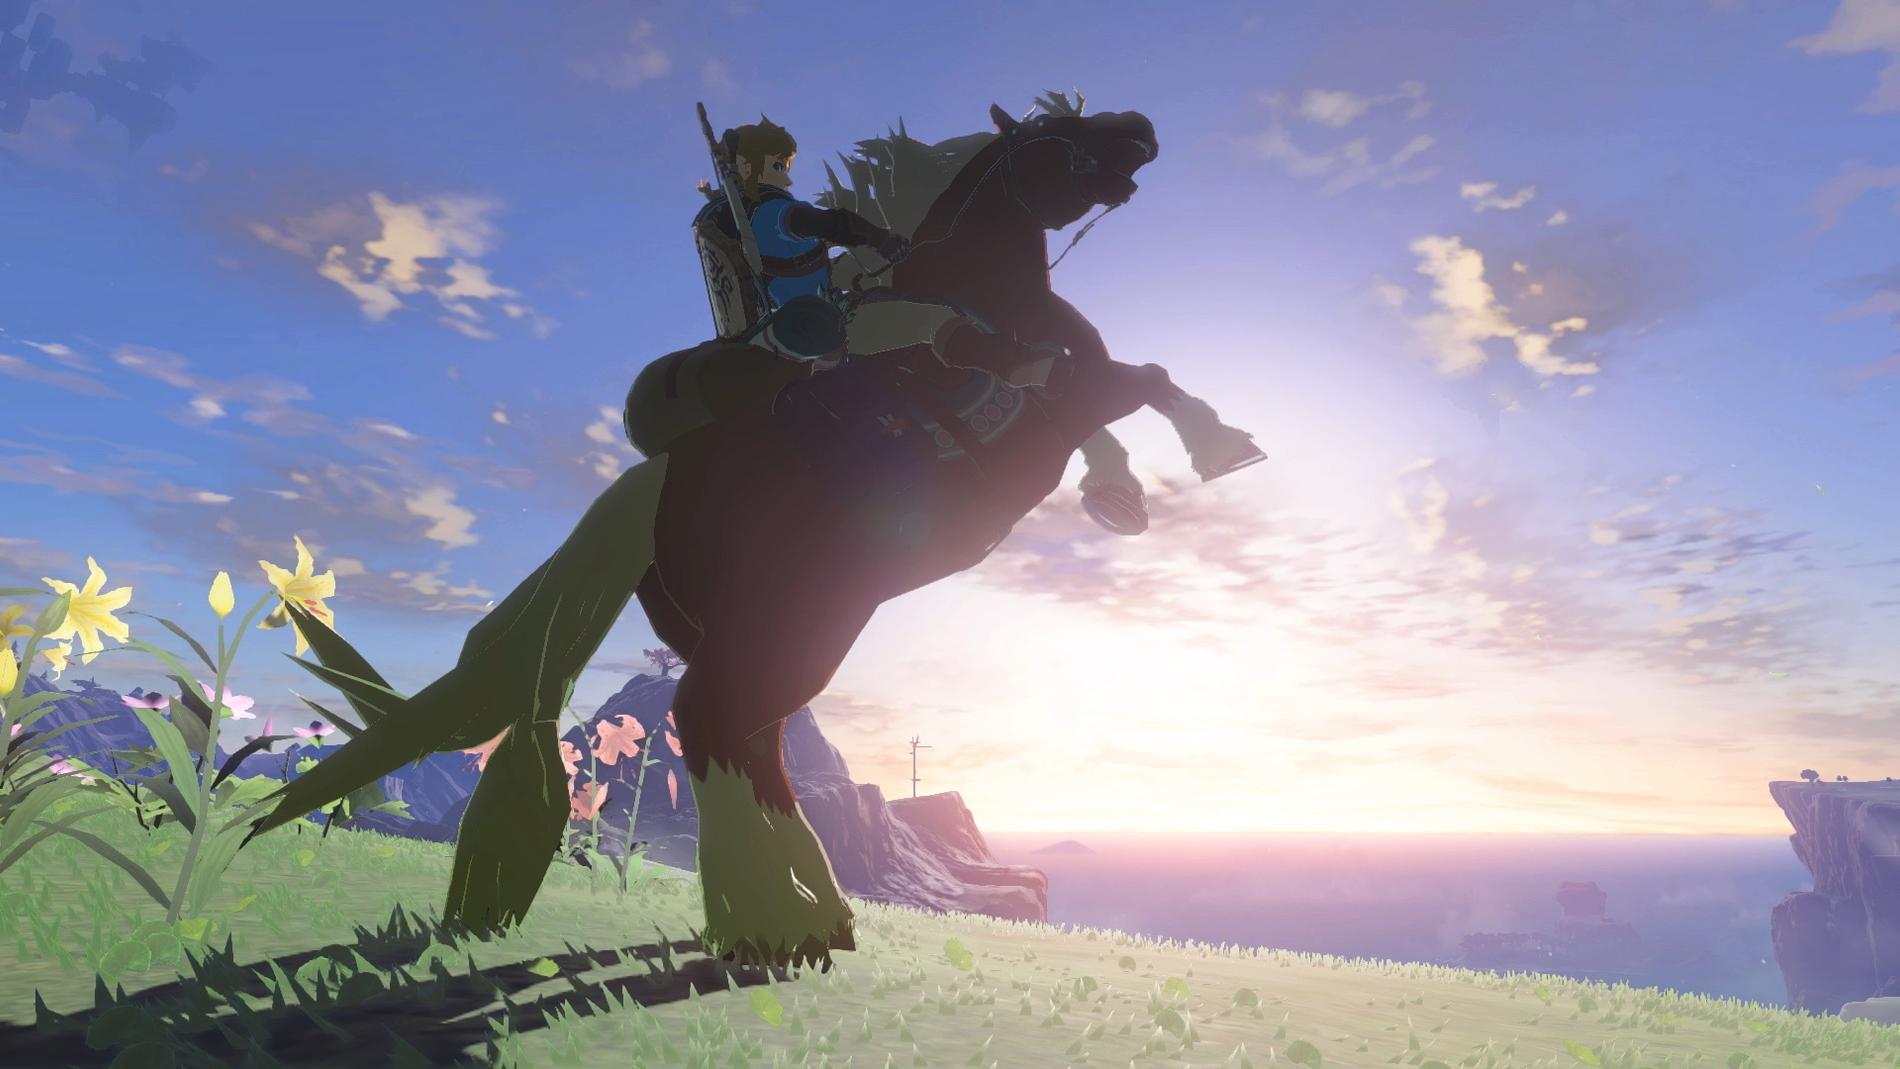 Skärmbild från "The legend of Zelda: Tears of the kingdom". Pressbild.